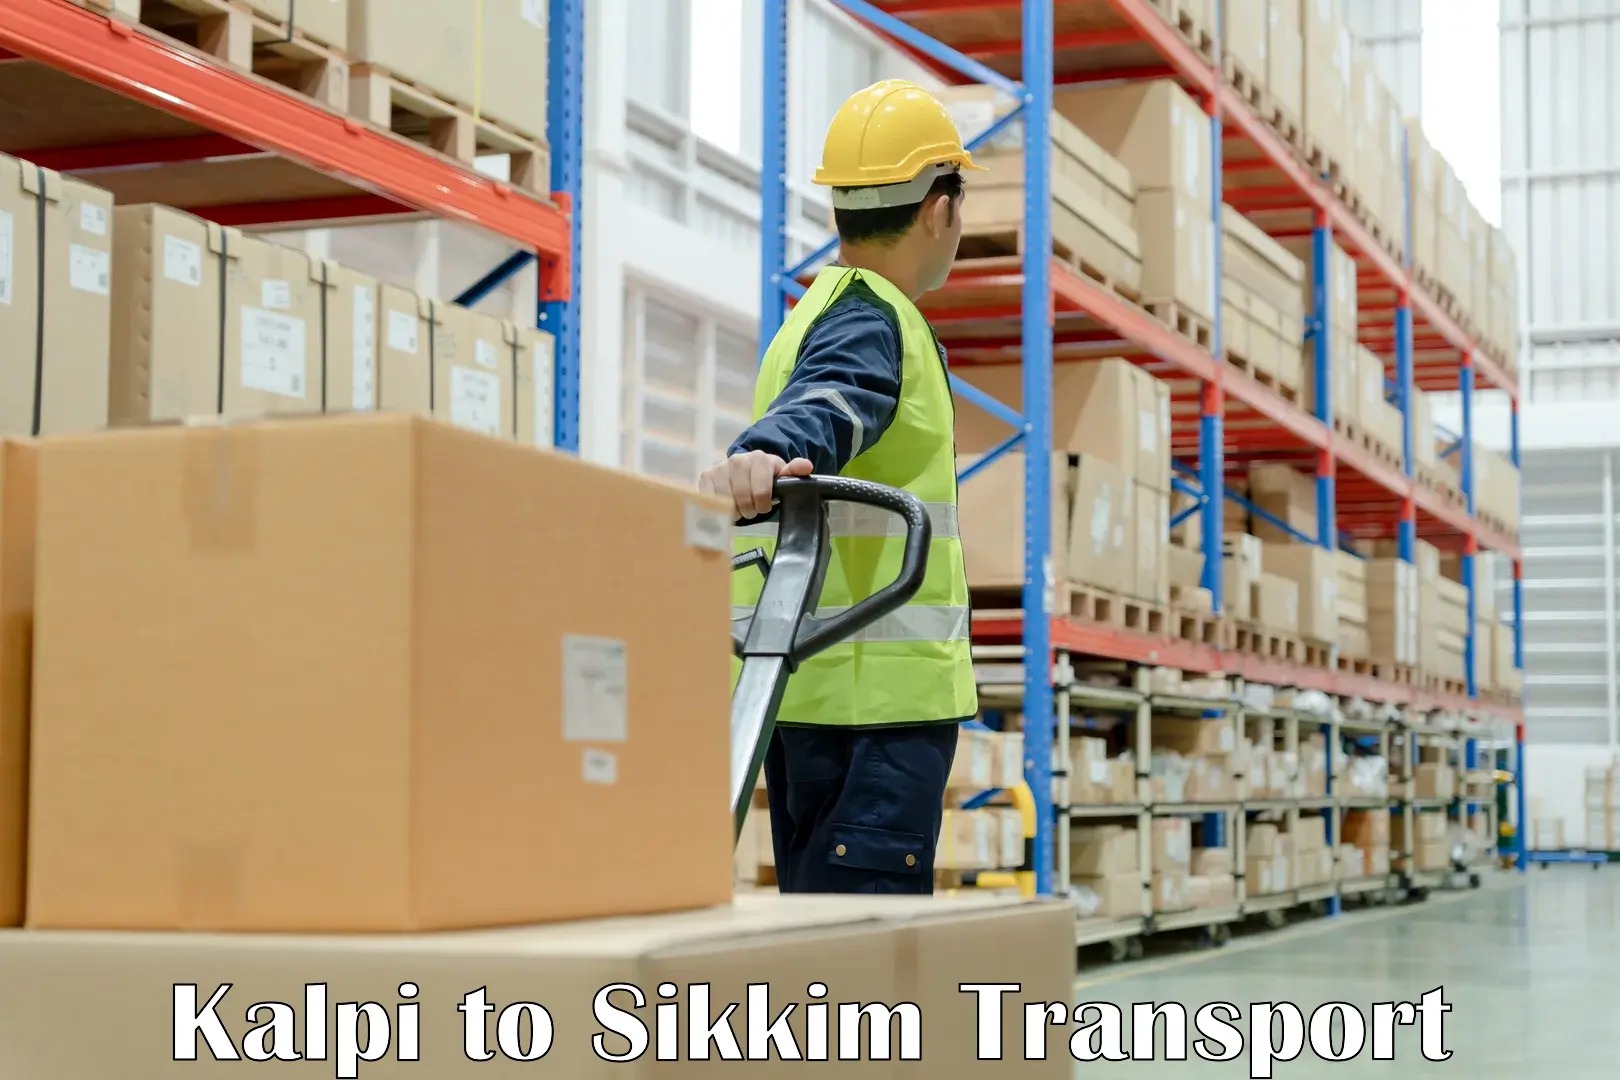 Pick up transport service Kalpi to South Sikkim